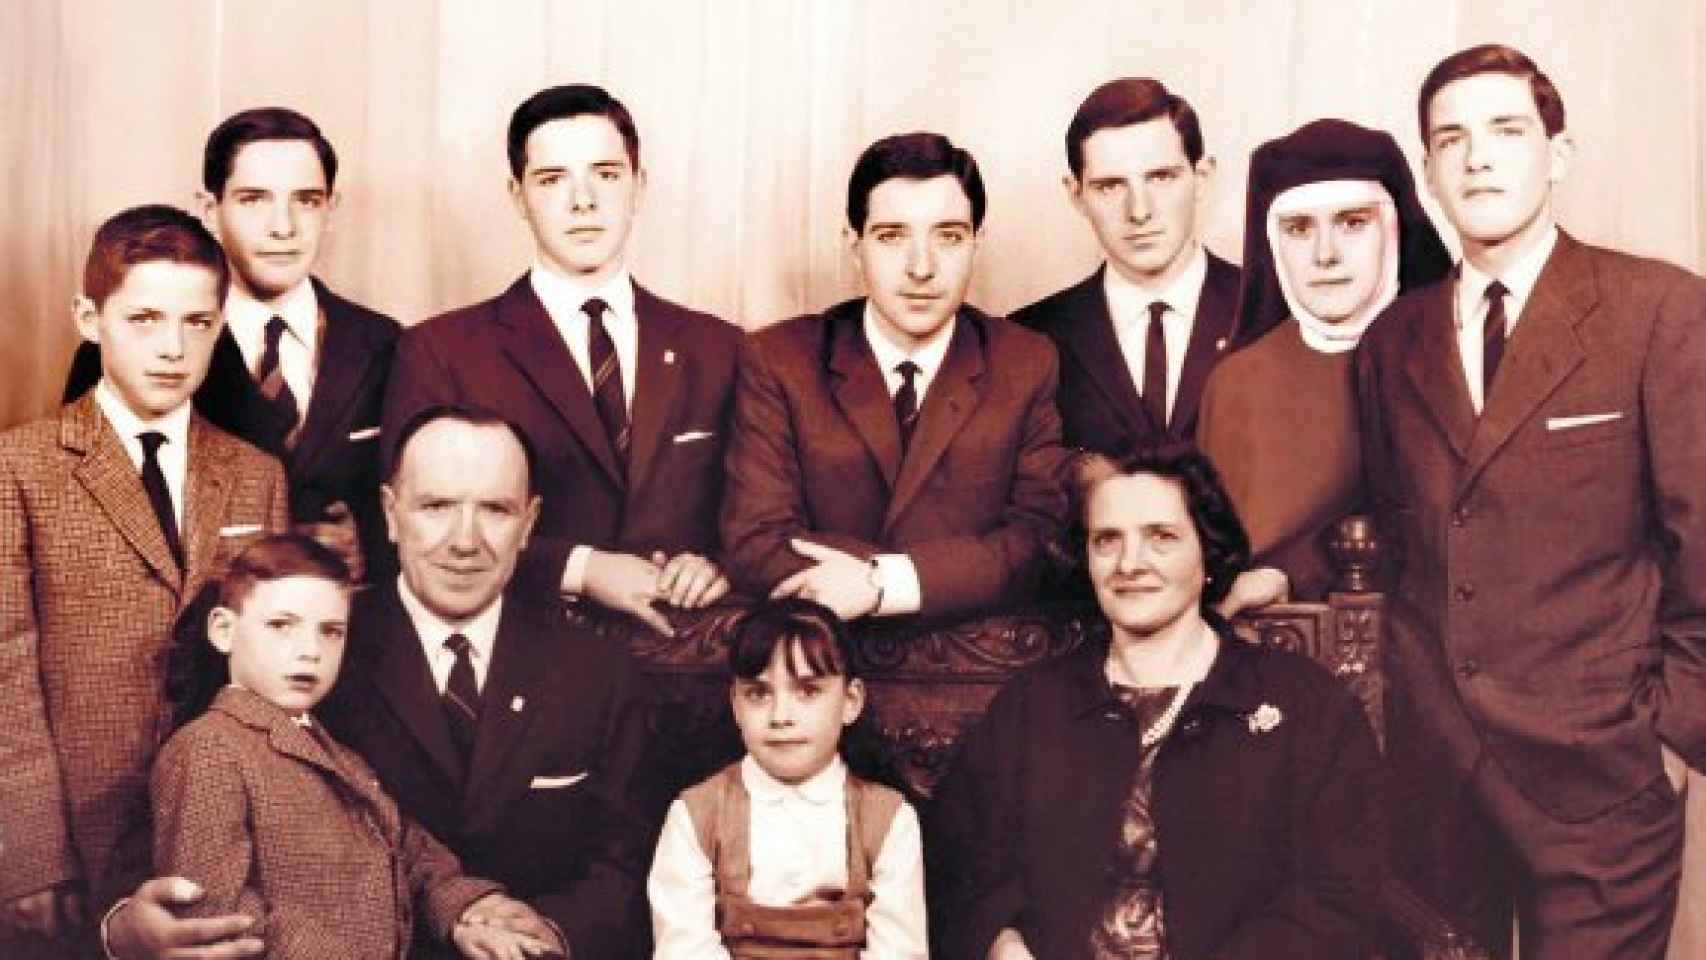 El matrimonio Gabilondo-Pujol y sus nueve hijos: en el centro, Iñaki; a la derecha, Ángel.